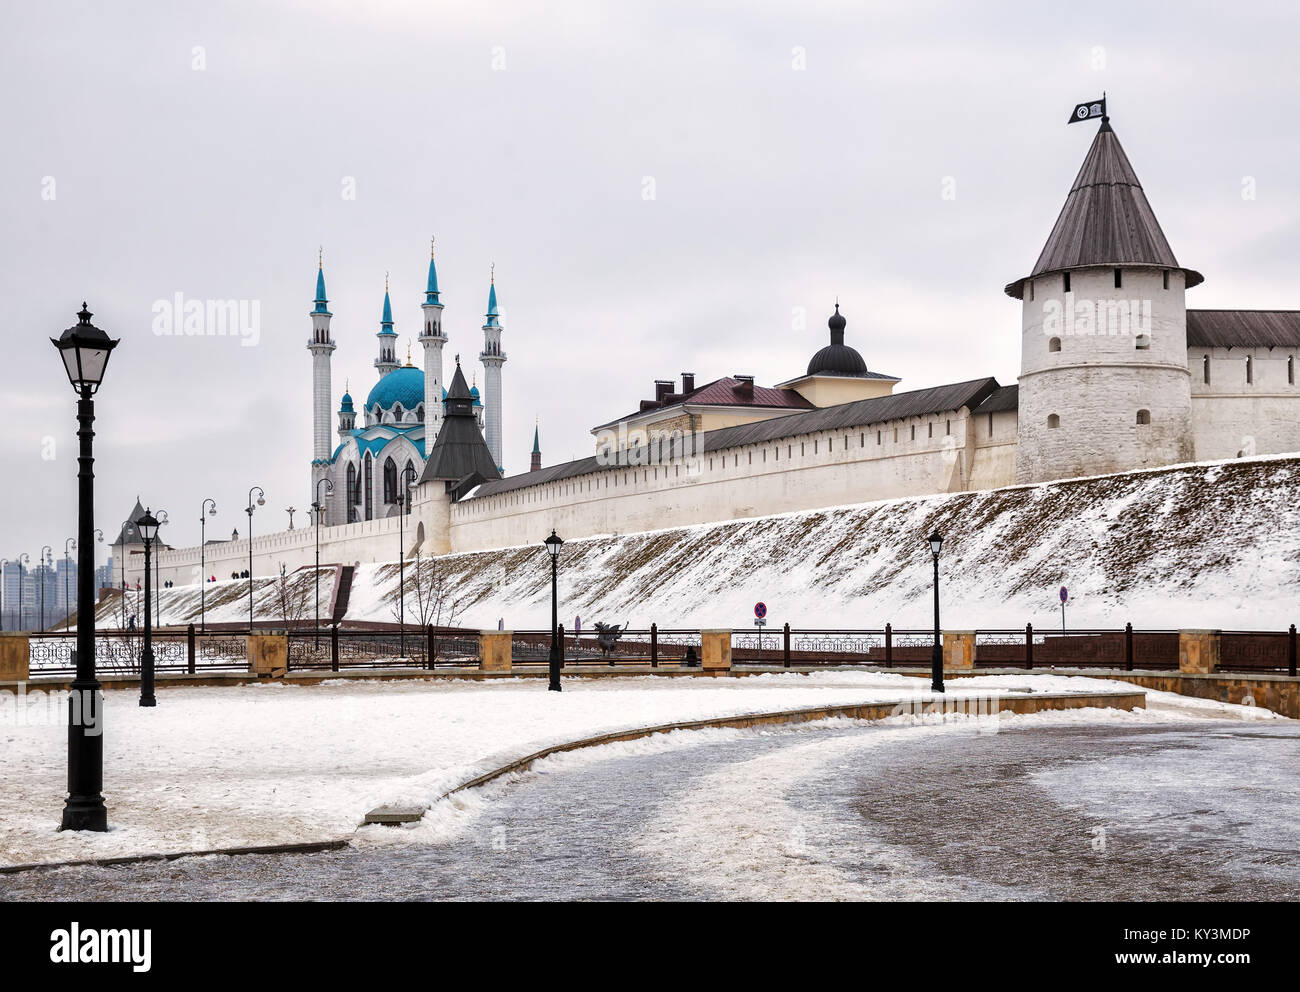 Vue sur le Kremlin de Kazan et la mosquée Kul-Sharif, Kazan, Russie Banque D'Images